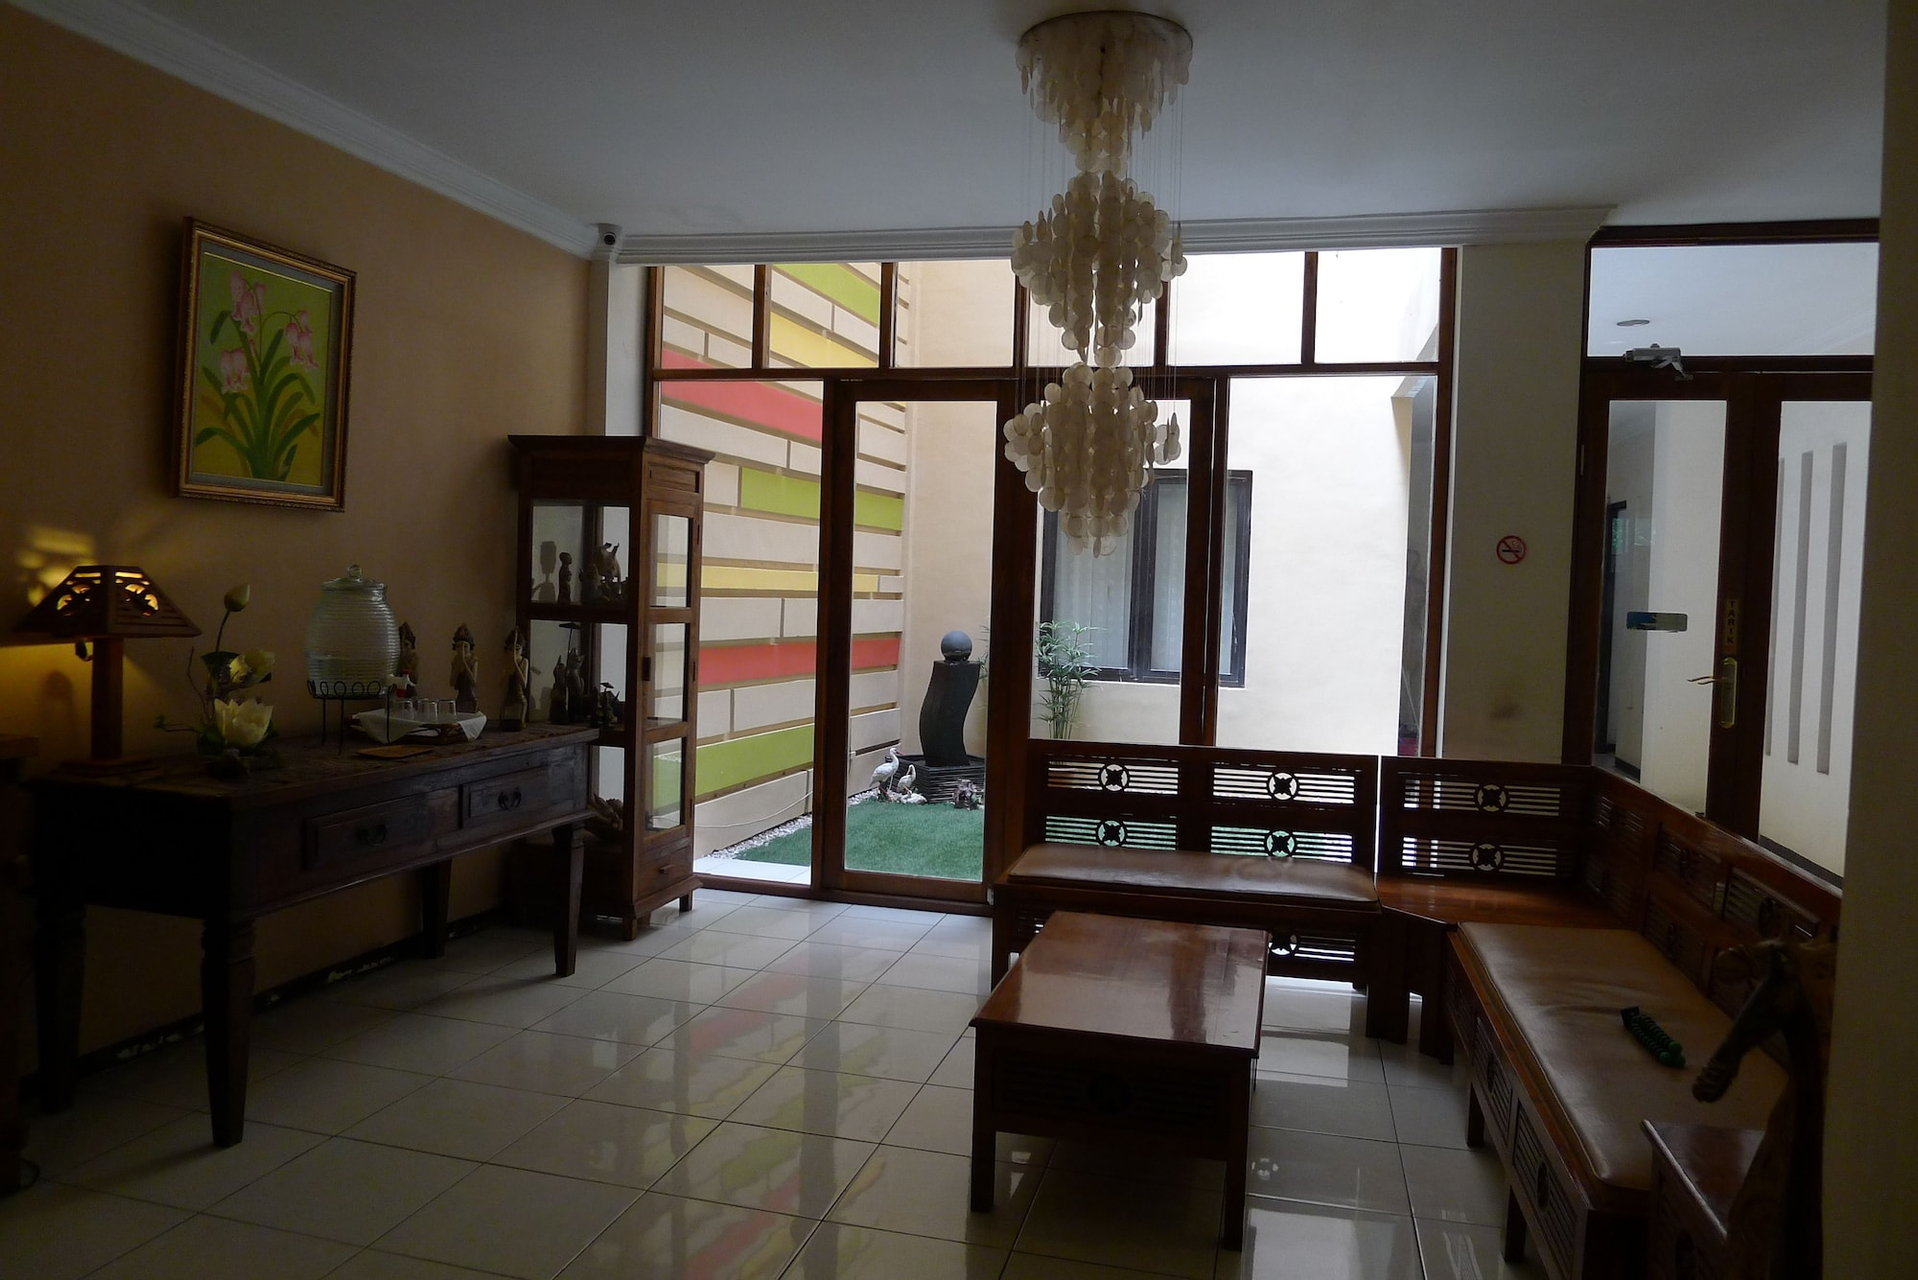 Dining Room 1, Jawa 22 Hotel and Residence, Surabaya